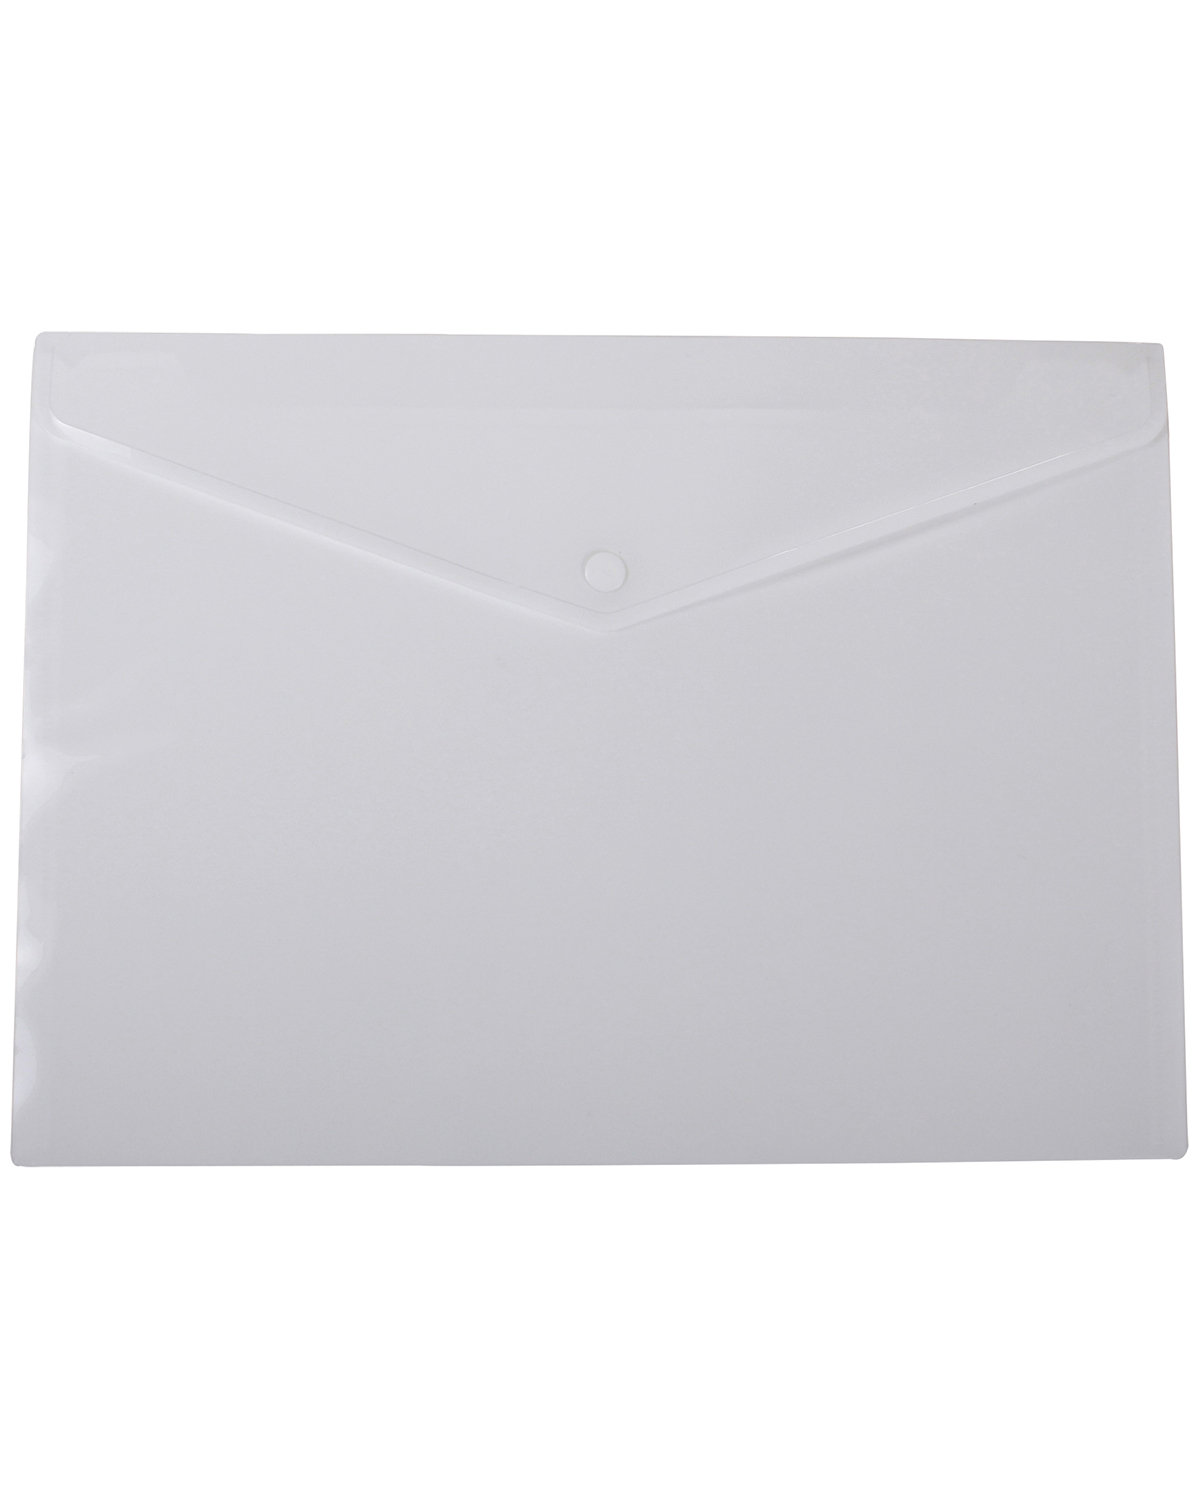 Prime Line Letter-Size Document Envelope white 